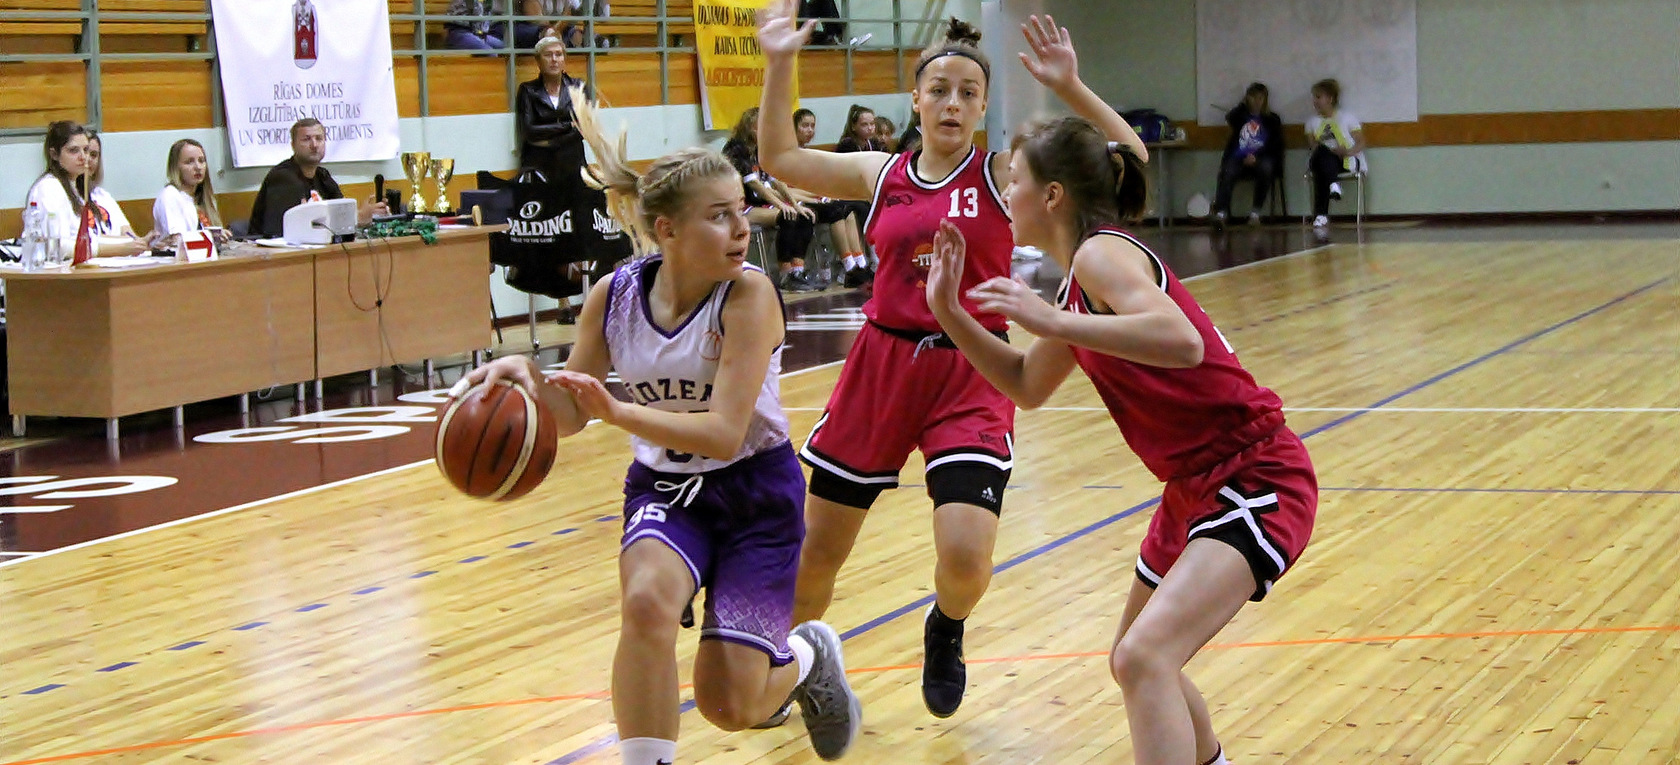 Noslēdzies tradicionālais meiteņu basketbola komandu turnīrs - Uļjanas Semjonovas kausa izcīņa